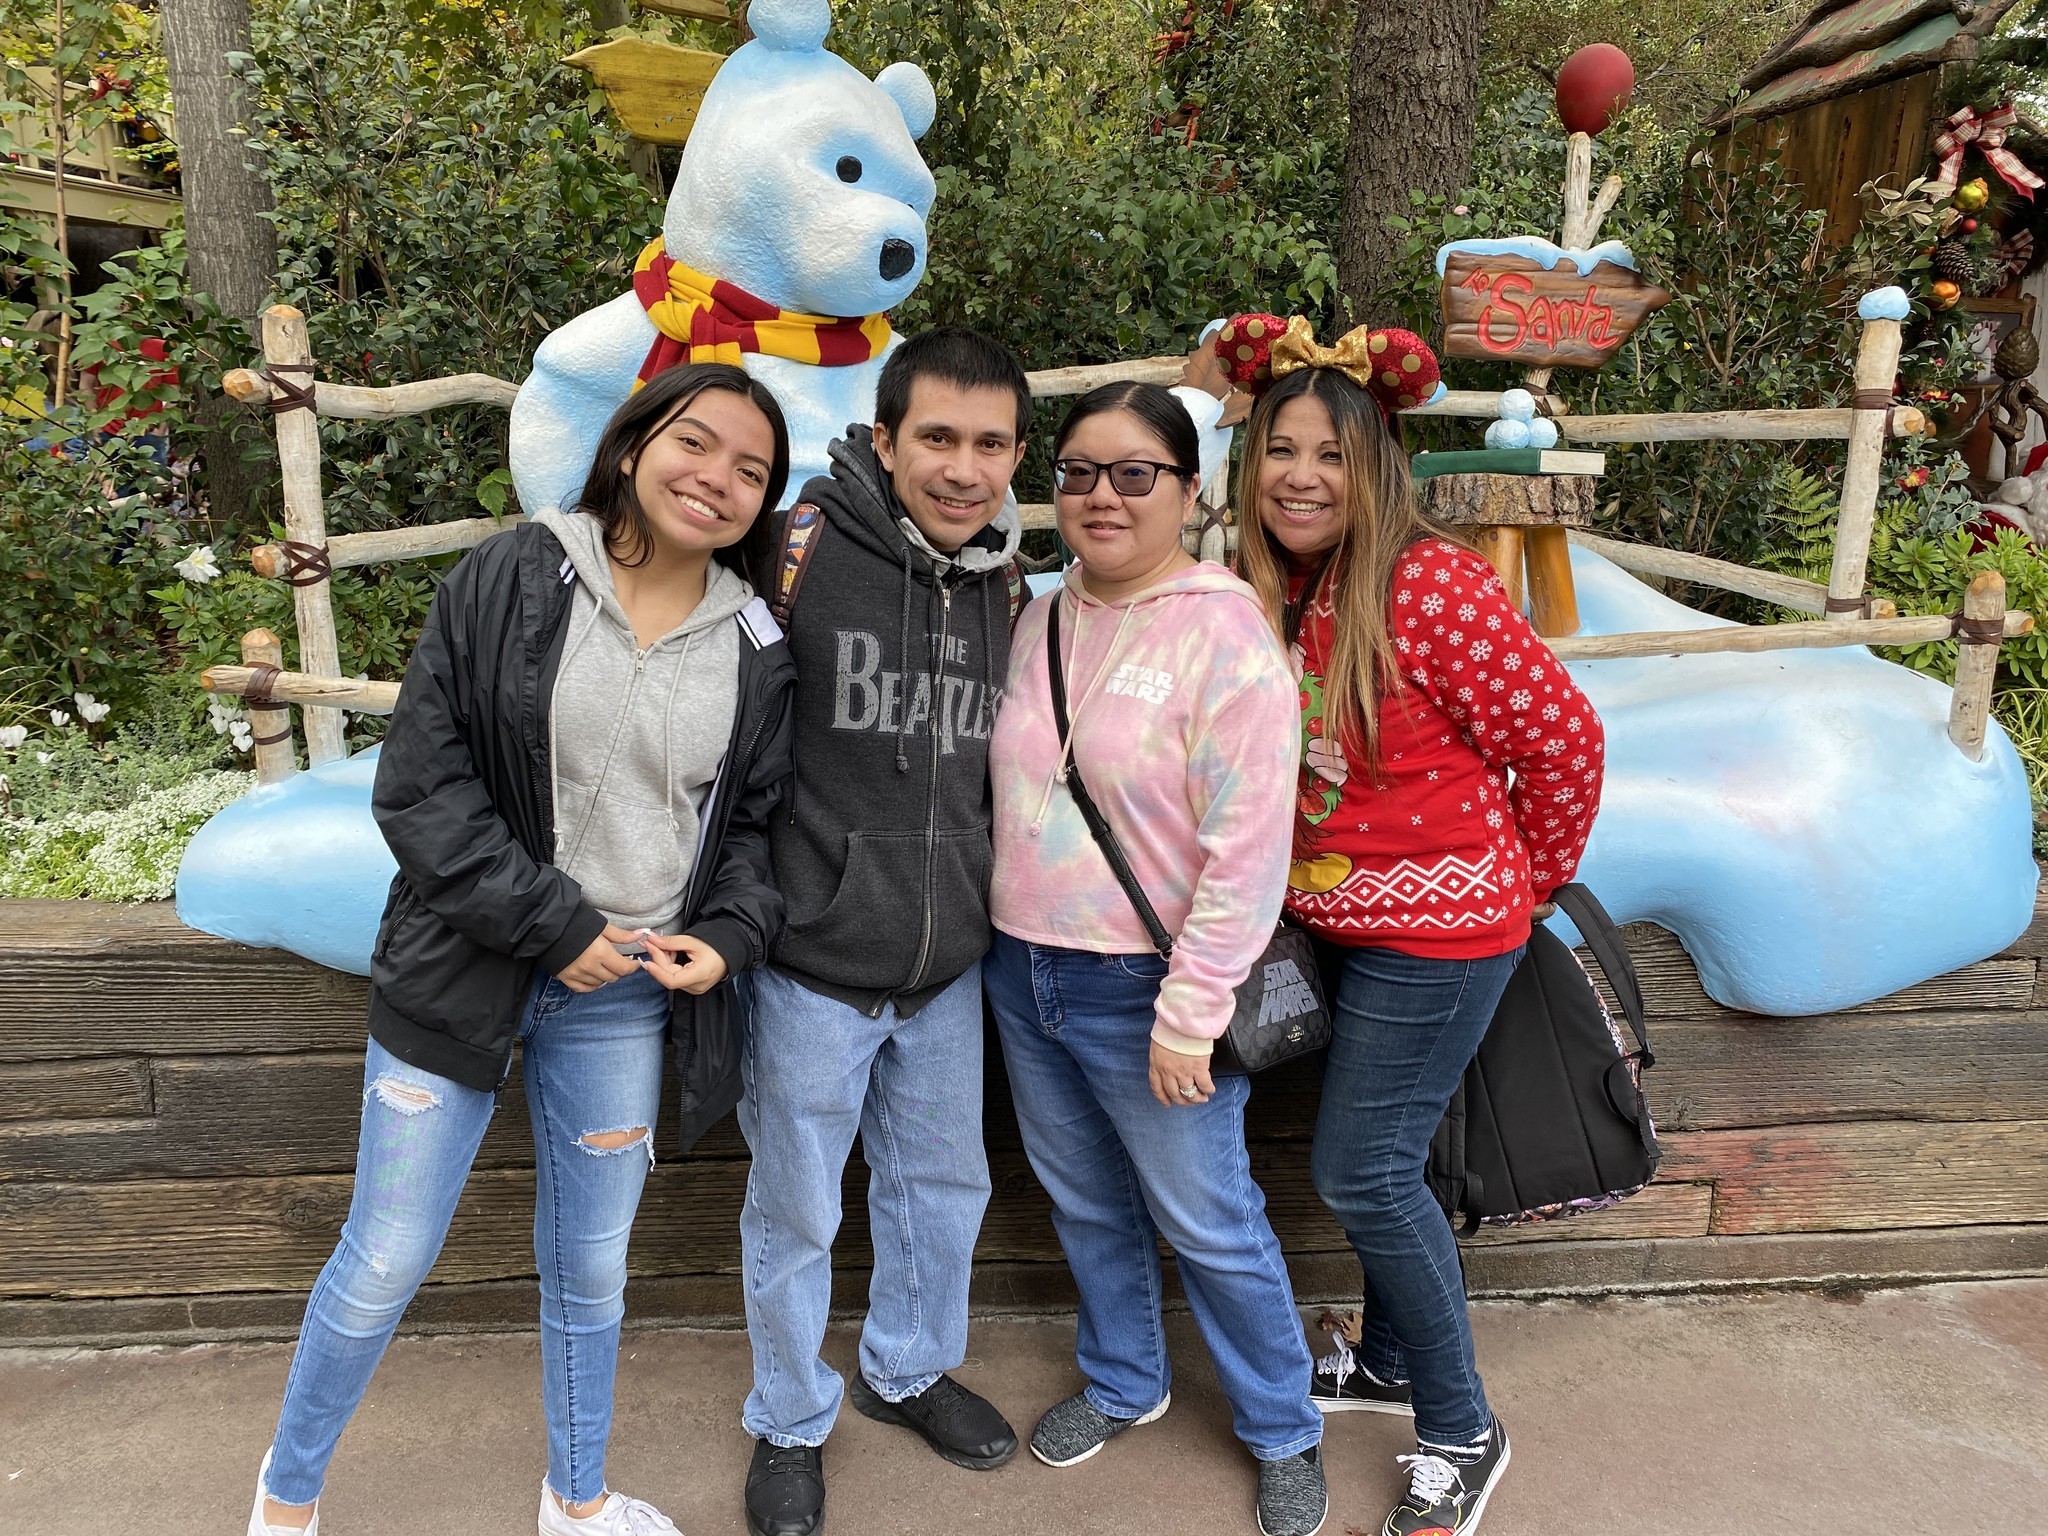 The Romero family at Winnie the Pooh's corner in Disneyland